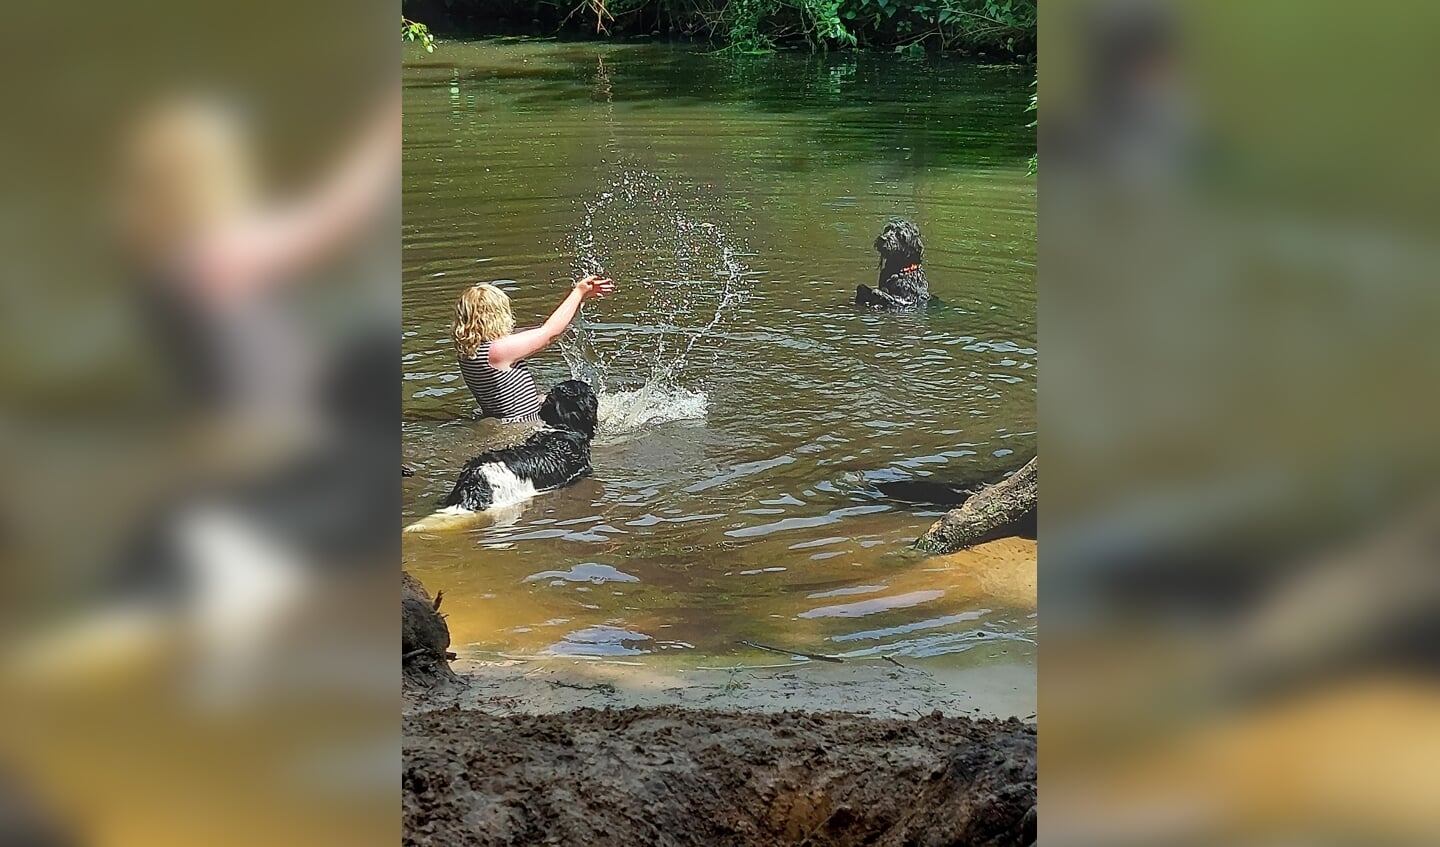 Mijn (autistische en verstandelijk beperkte) dochter Mila in het Lockhorsterbos. Het was een warme, prachtige dag en tijdens het uitlaten van onze eigen hond mocht zij het in het water spelen. Mila is gek op dieren.
Deze hond (niet onze hond) vond het prachtig om te spelen met Mila. Ze zijn een hele lange tijd samen in het water geweest en ik heb onder meer deze mooie foto gemaakt. 